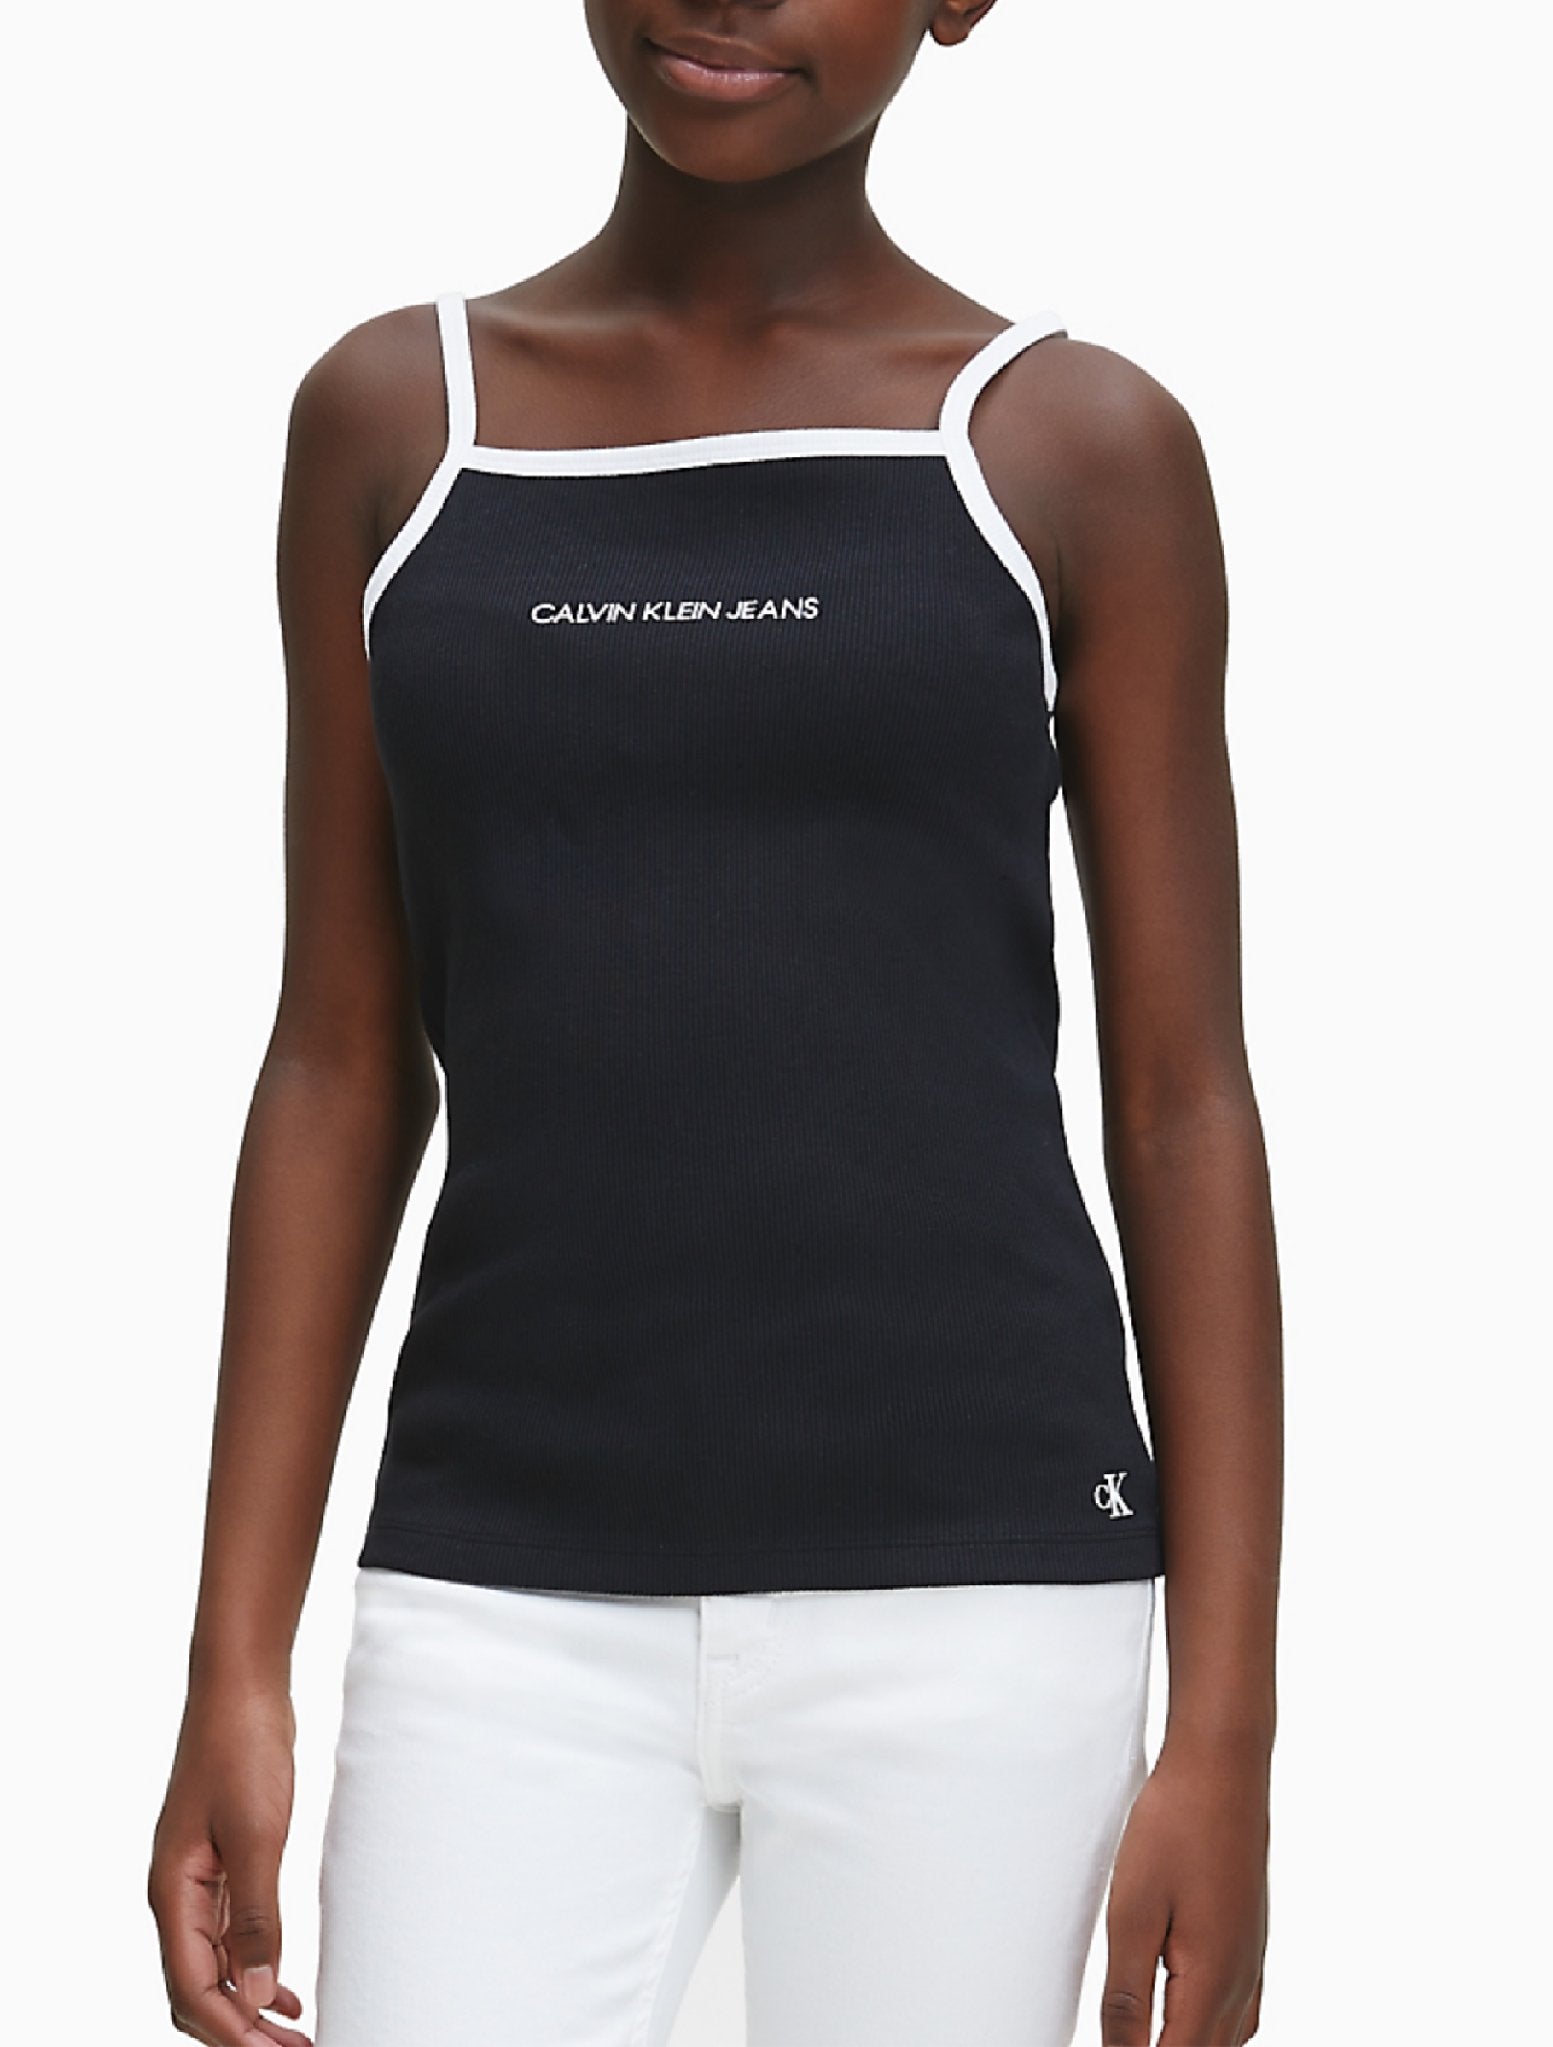 Meisjes Rib Sleeveless Top van Calvin Klein in de kleur Wit in maat 176.